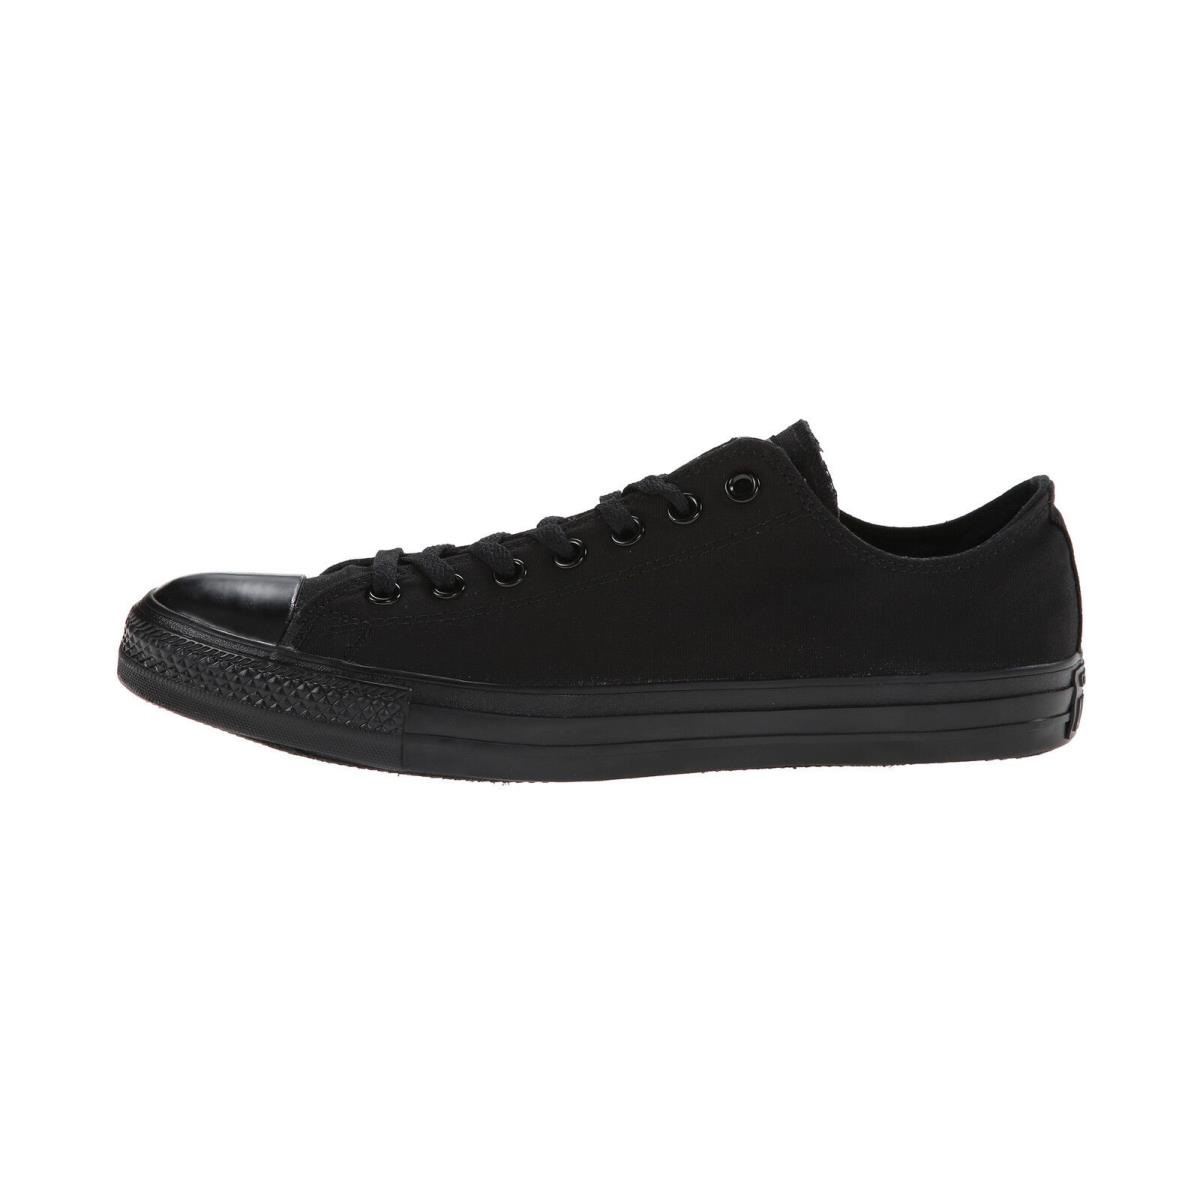 Converse All Star Men Shoes Black Mono Low Top Chuck Taylor Fashion Sneaker